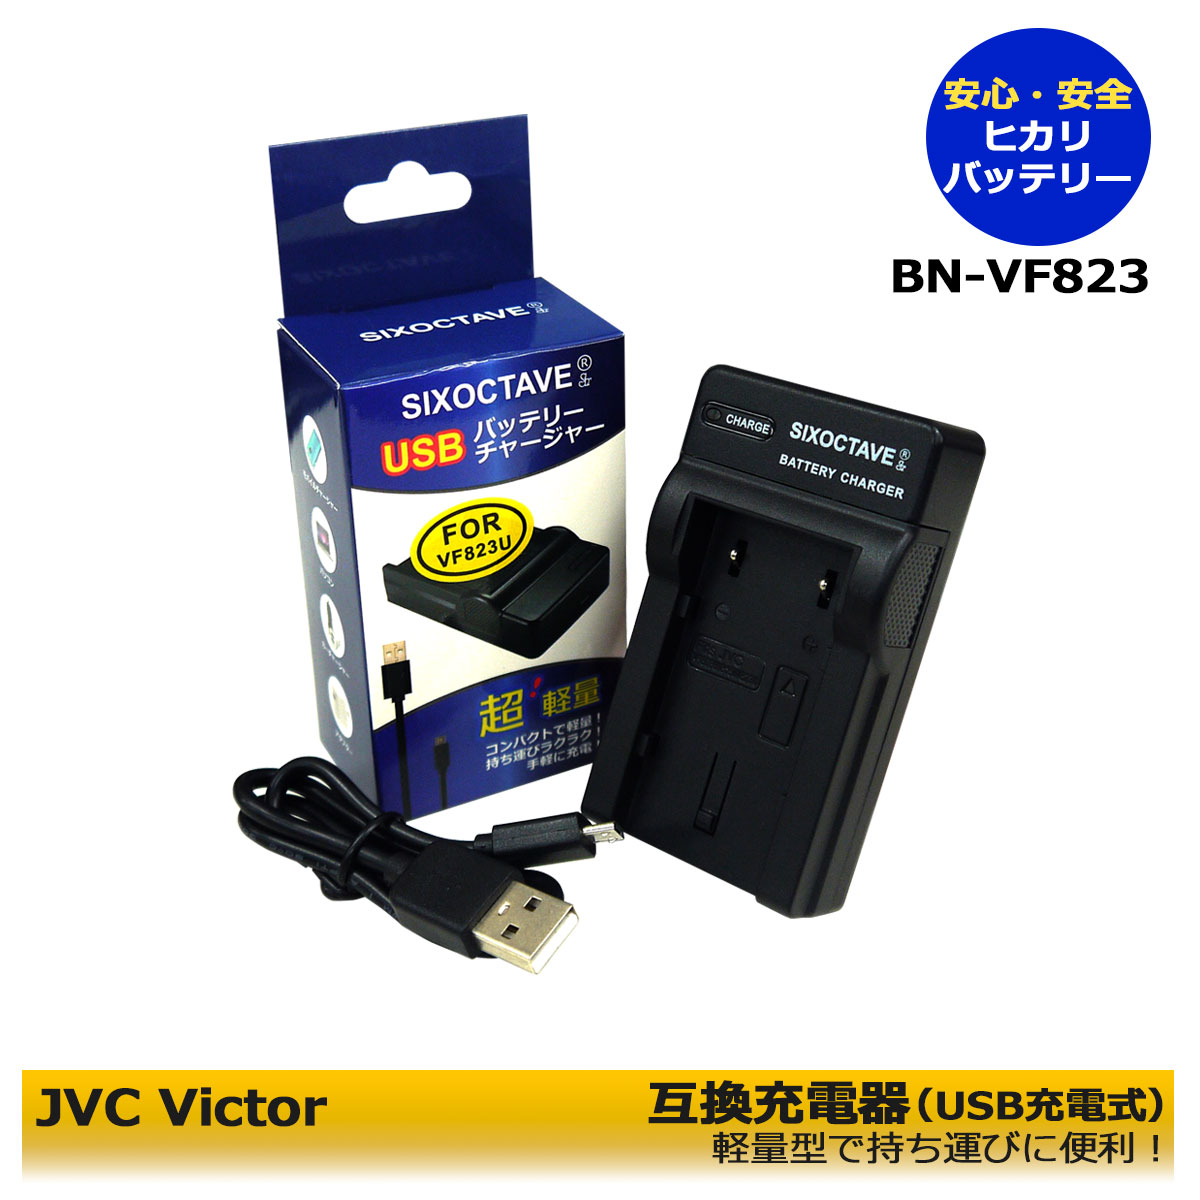 日本ビクターJVC 【あす楽対応】JVC AA-VF8 対応 互換USB充電器 BN-VF823 BN-VF808 BN-VF908 等GZ-MG262/GZ-HD5/GZ-HD7/MG880/GS-TD1/GZ-HM400 /GZ-HD300/MG220/MG650/MG35/MG260 /GZ-MG880/GZ-HM200 VU-V863KIT/GZ-X900 用